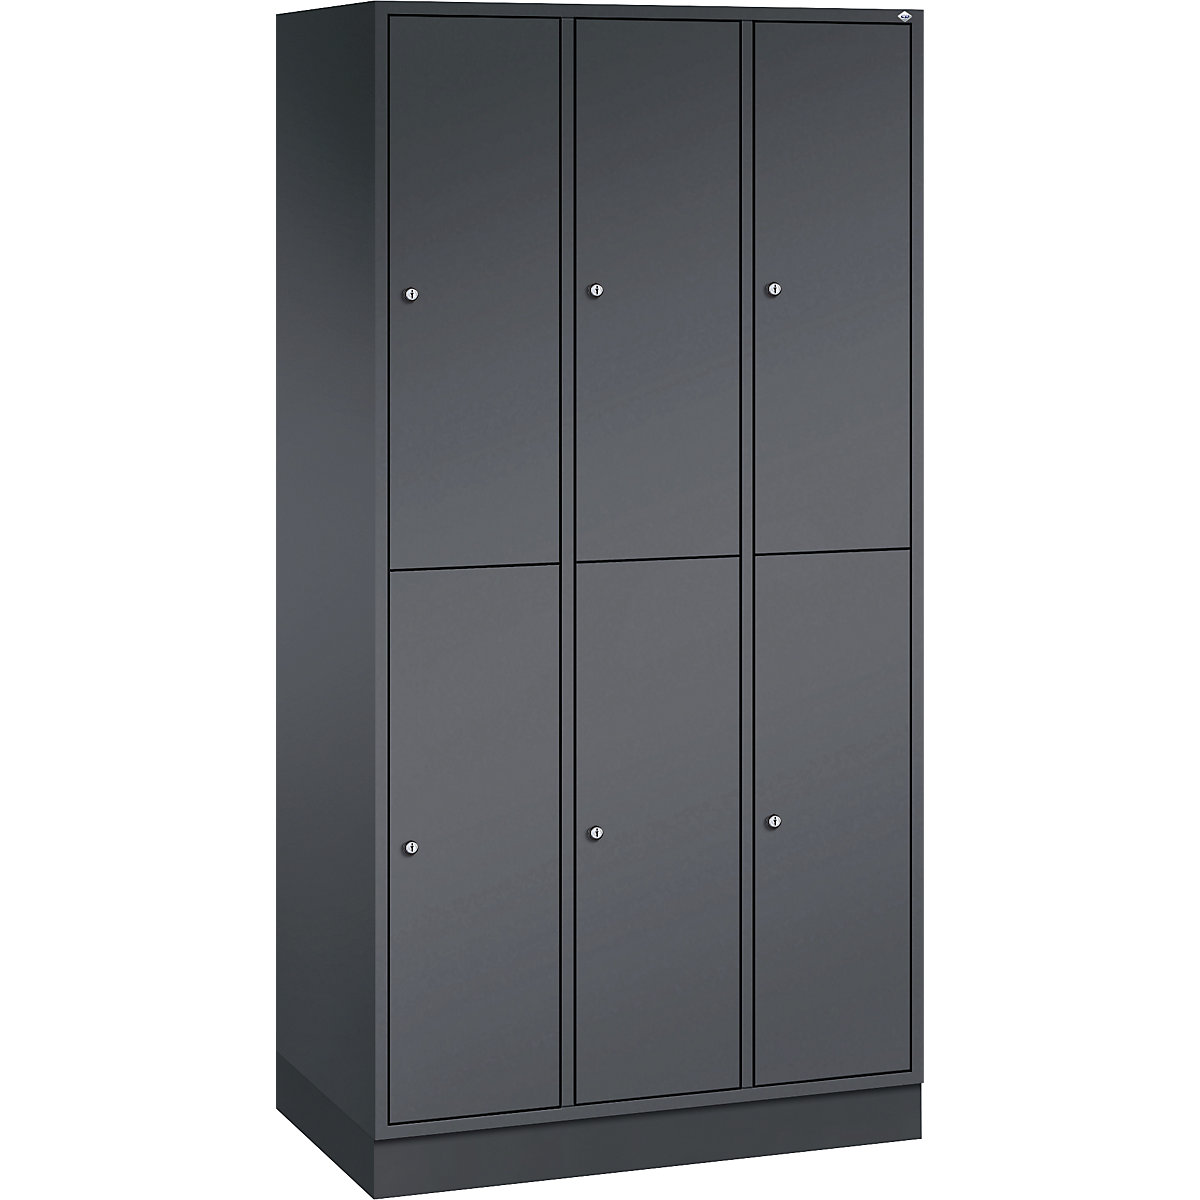 INTRO double tier steel cloakroom locker – C+P, WxD 920 x 500 mm, 6 compartments, black grey body, black grey doors